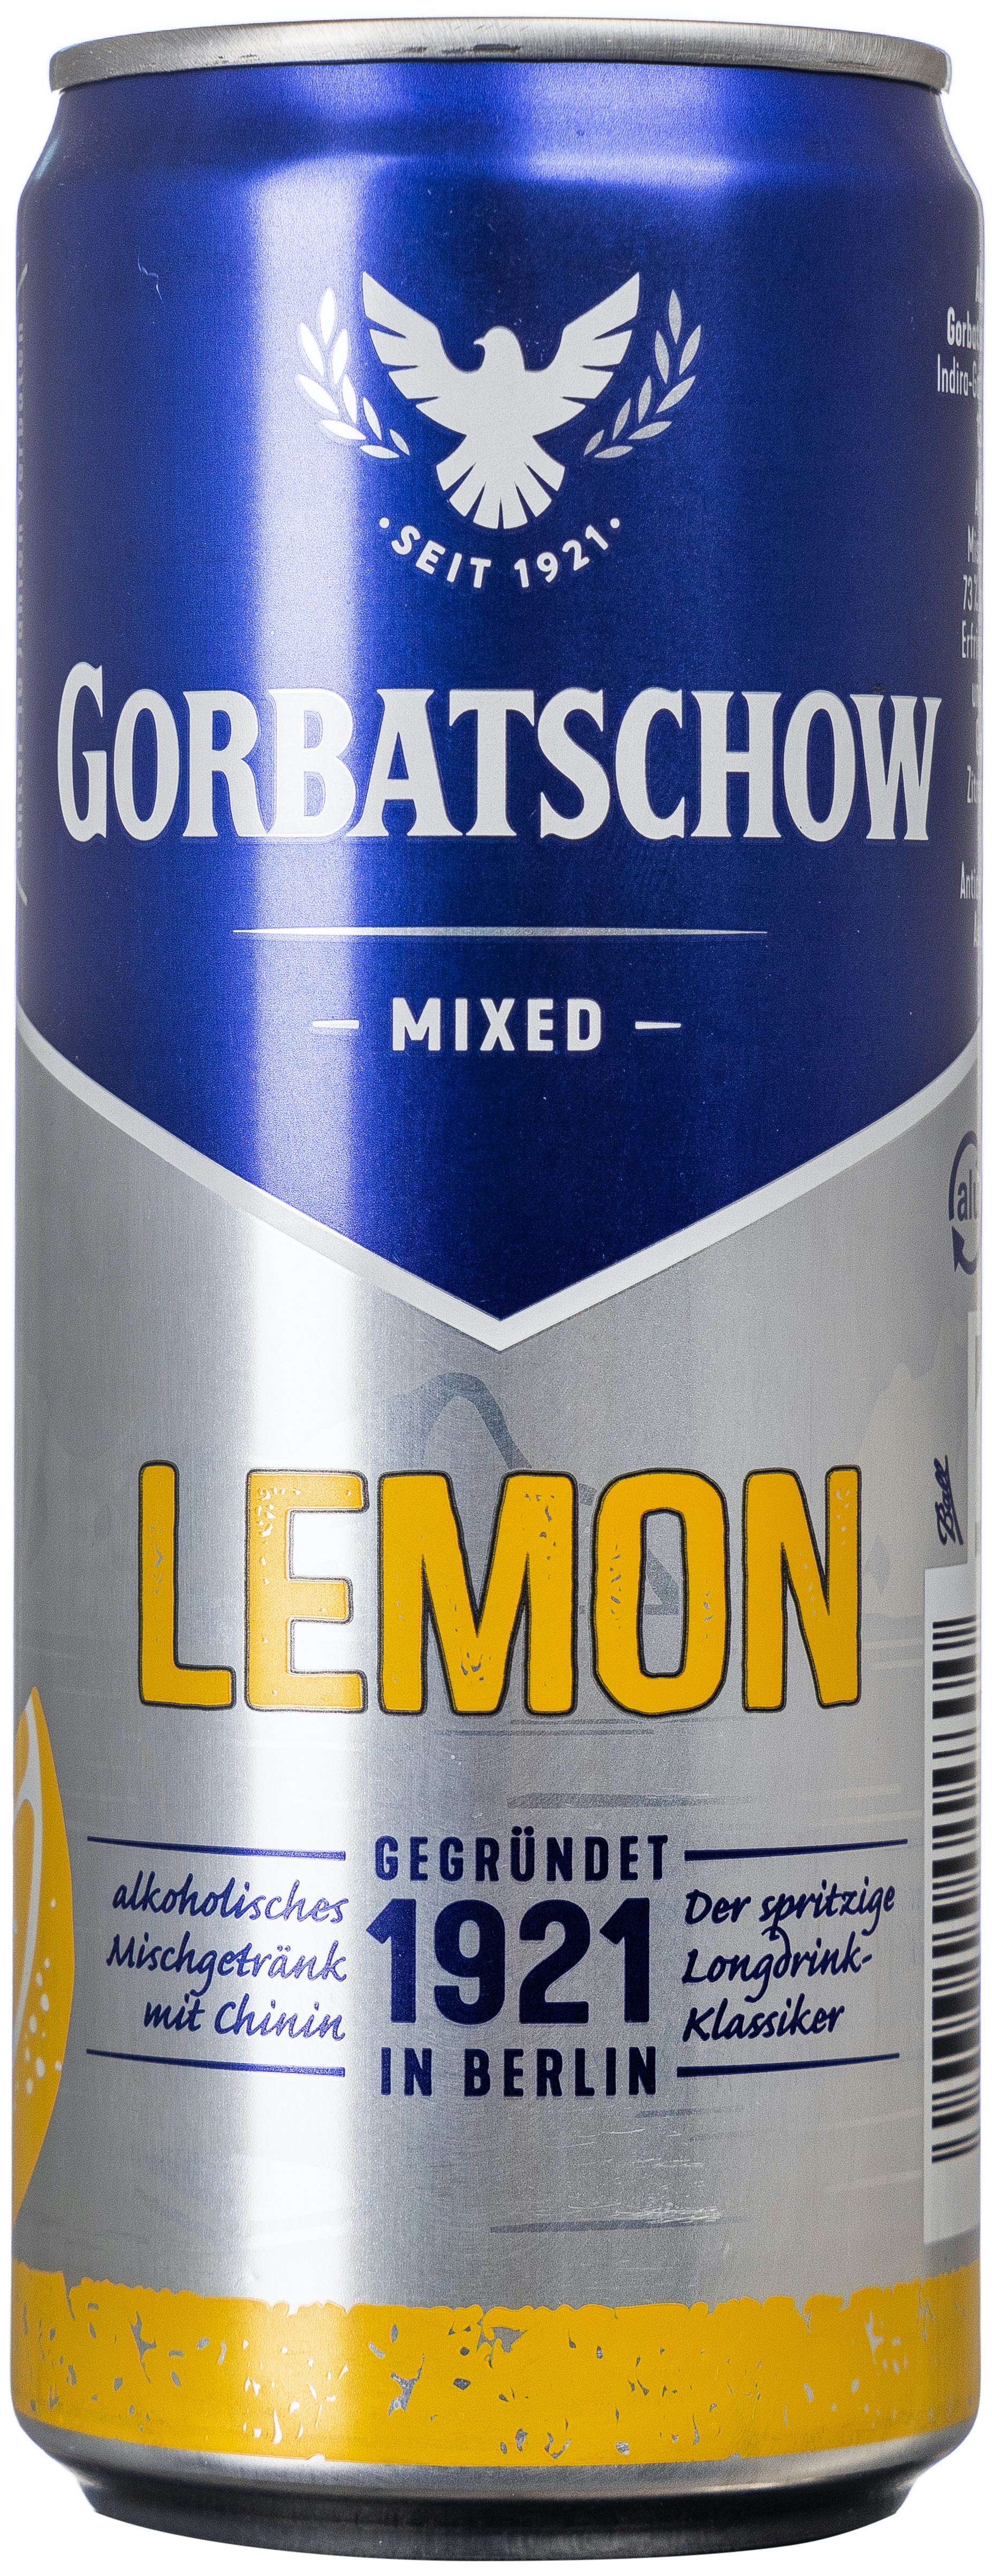 Wodka Gorbatschow Lemon 10% vol. 0,33L EINWEG